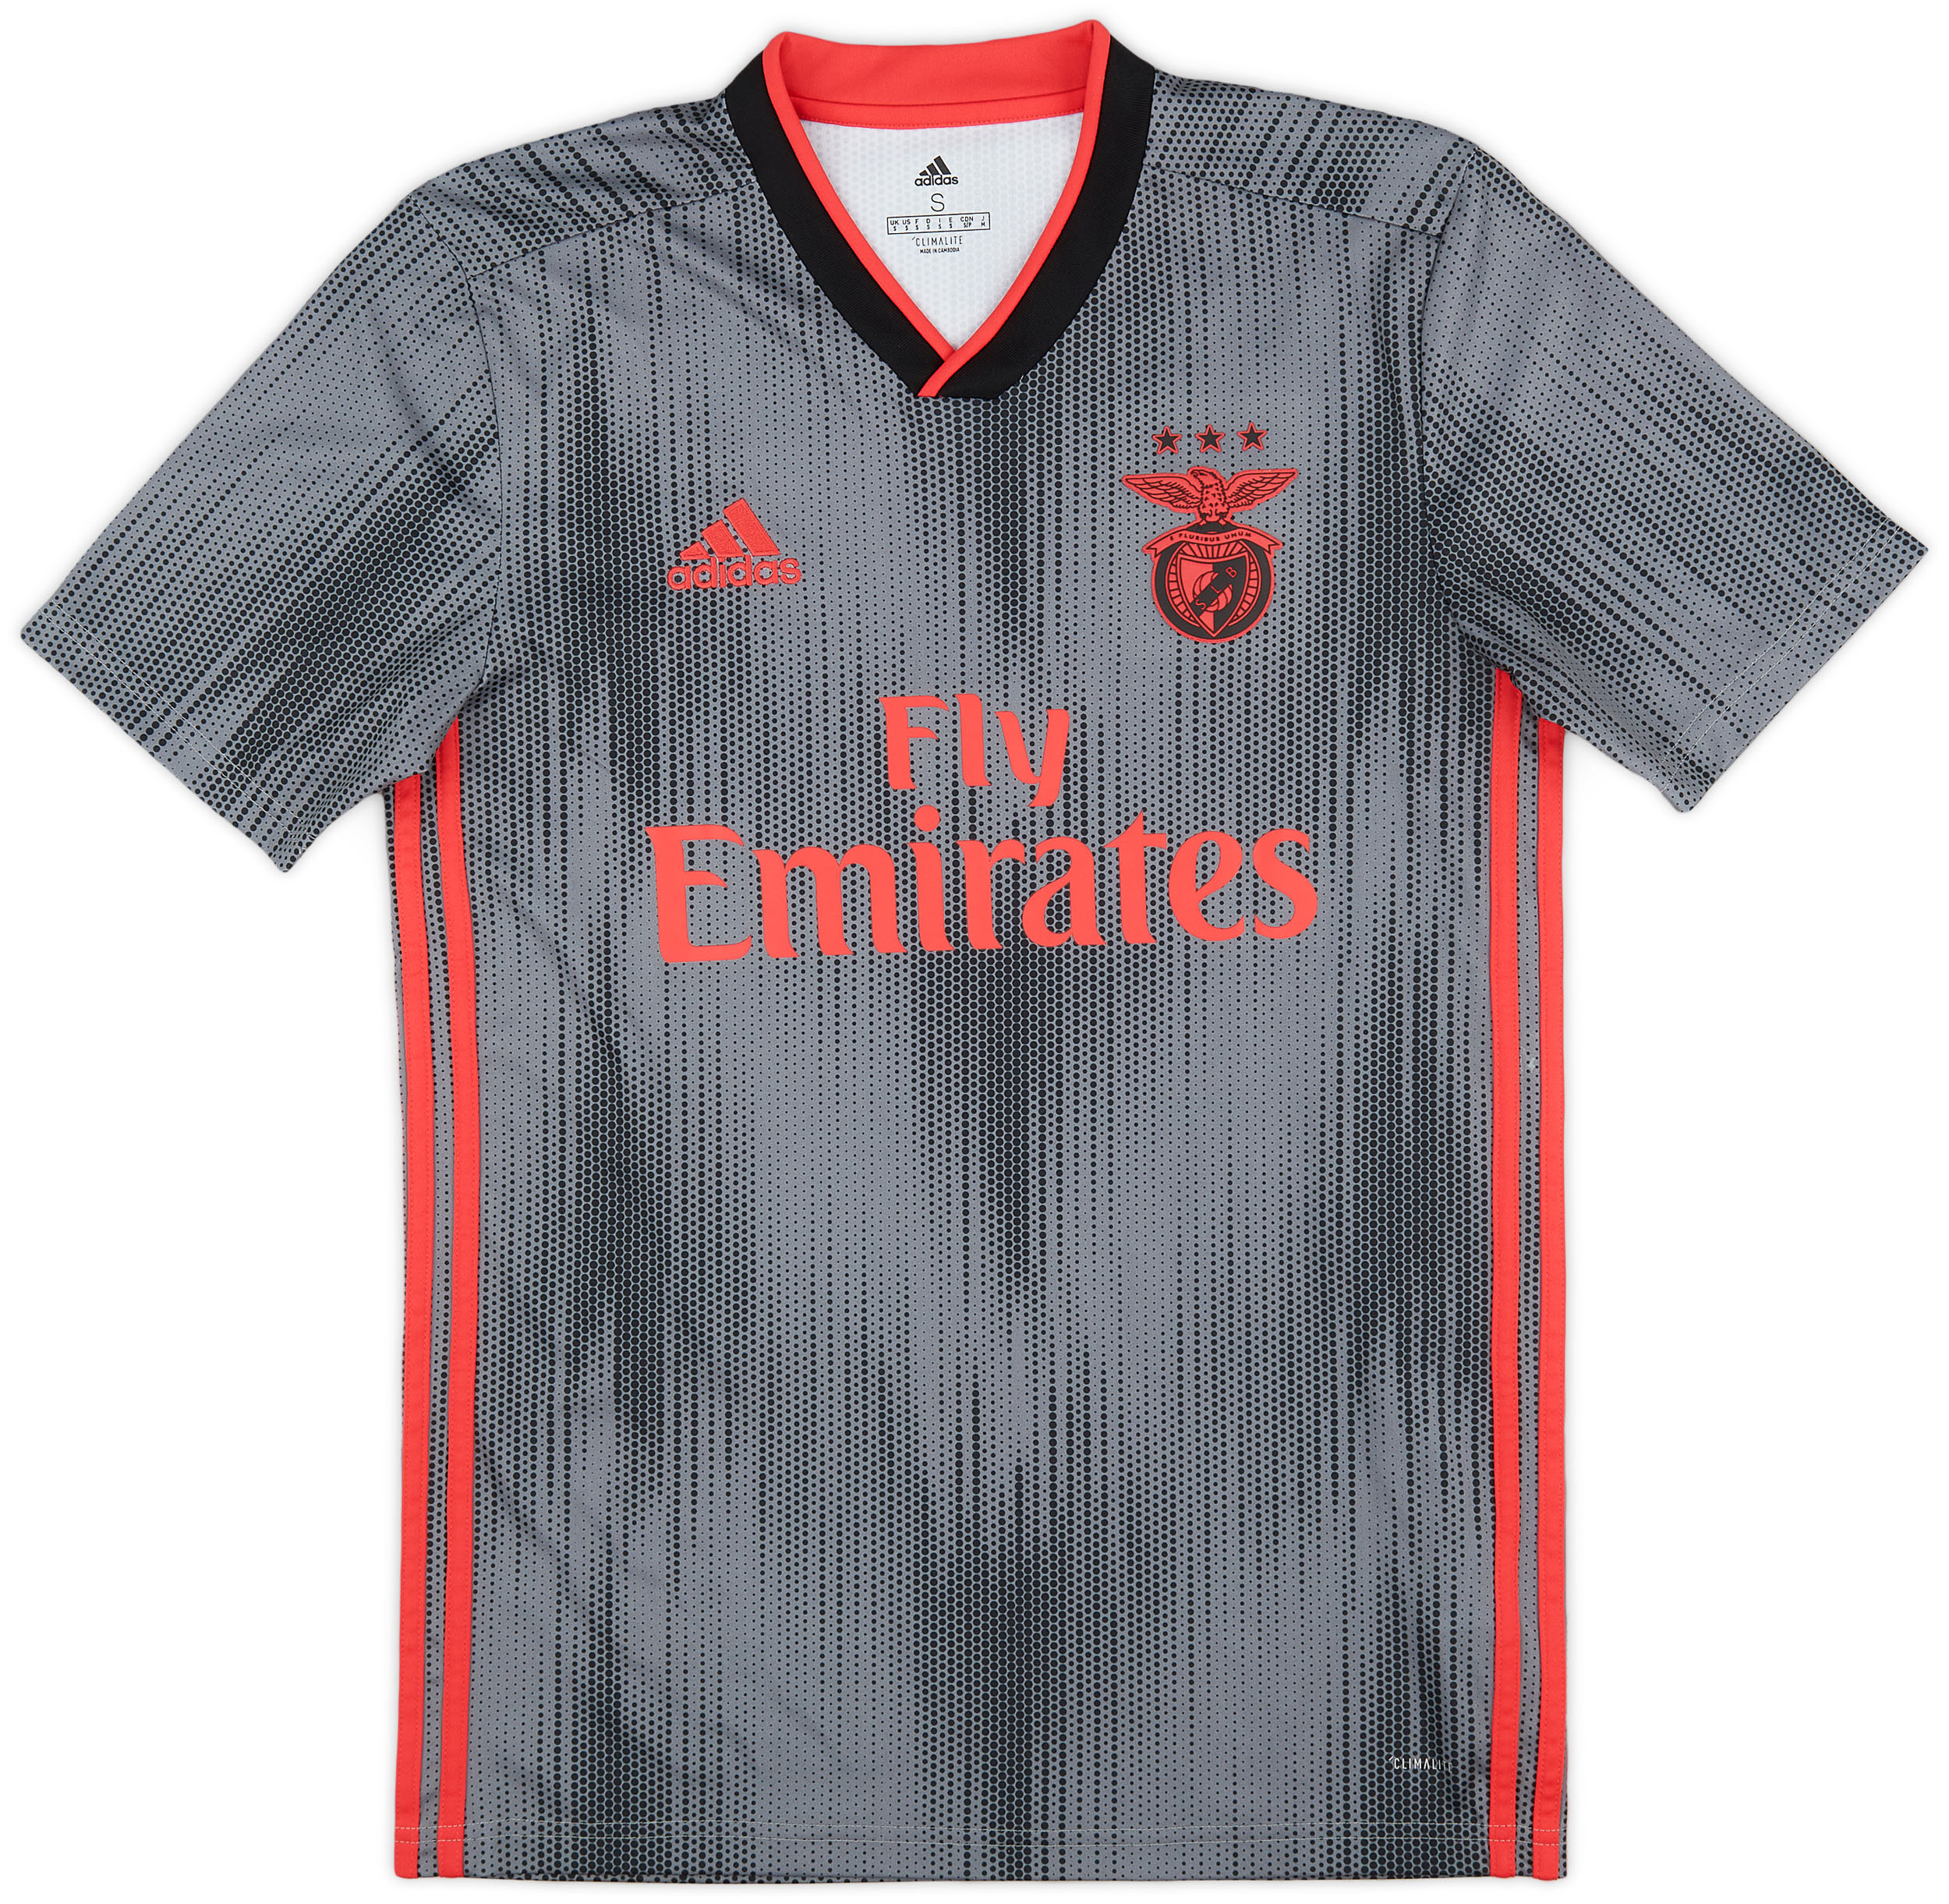 Benfica  Away shirt (Original)